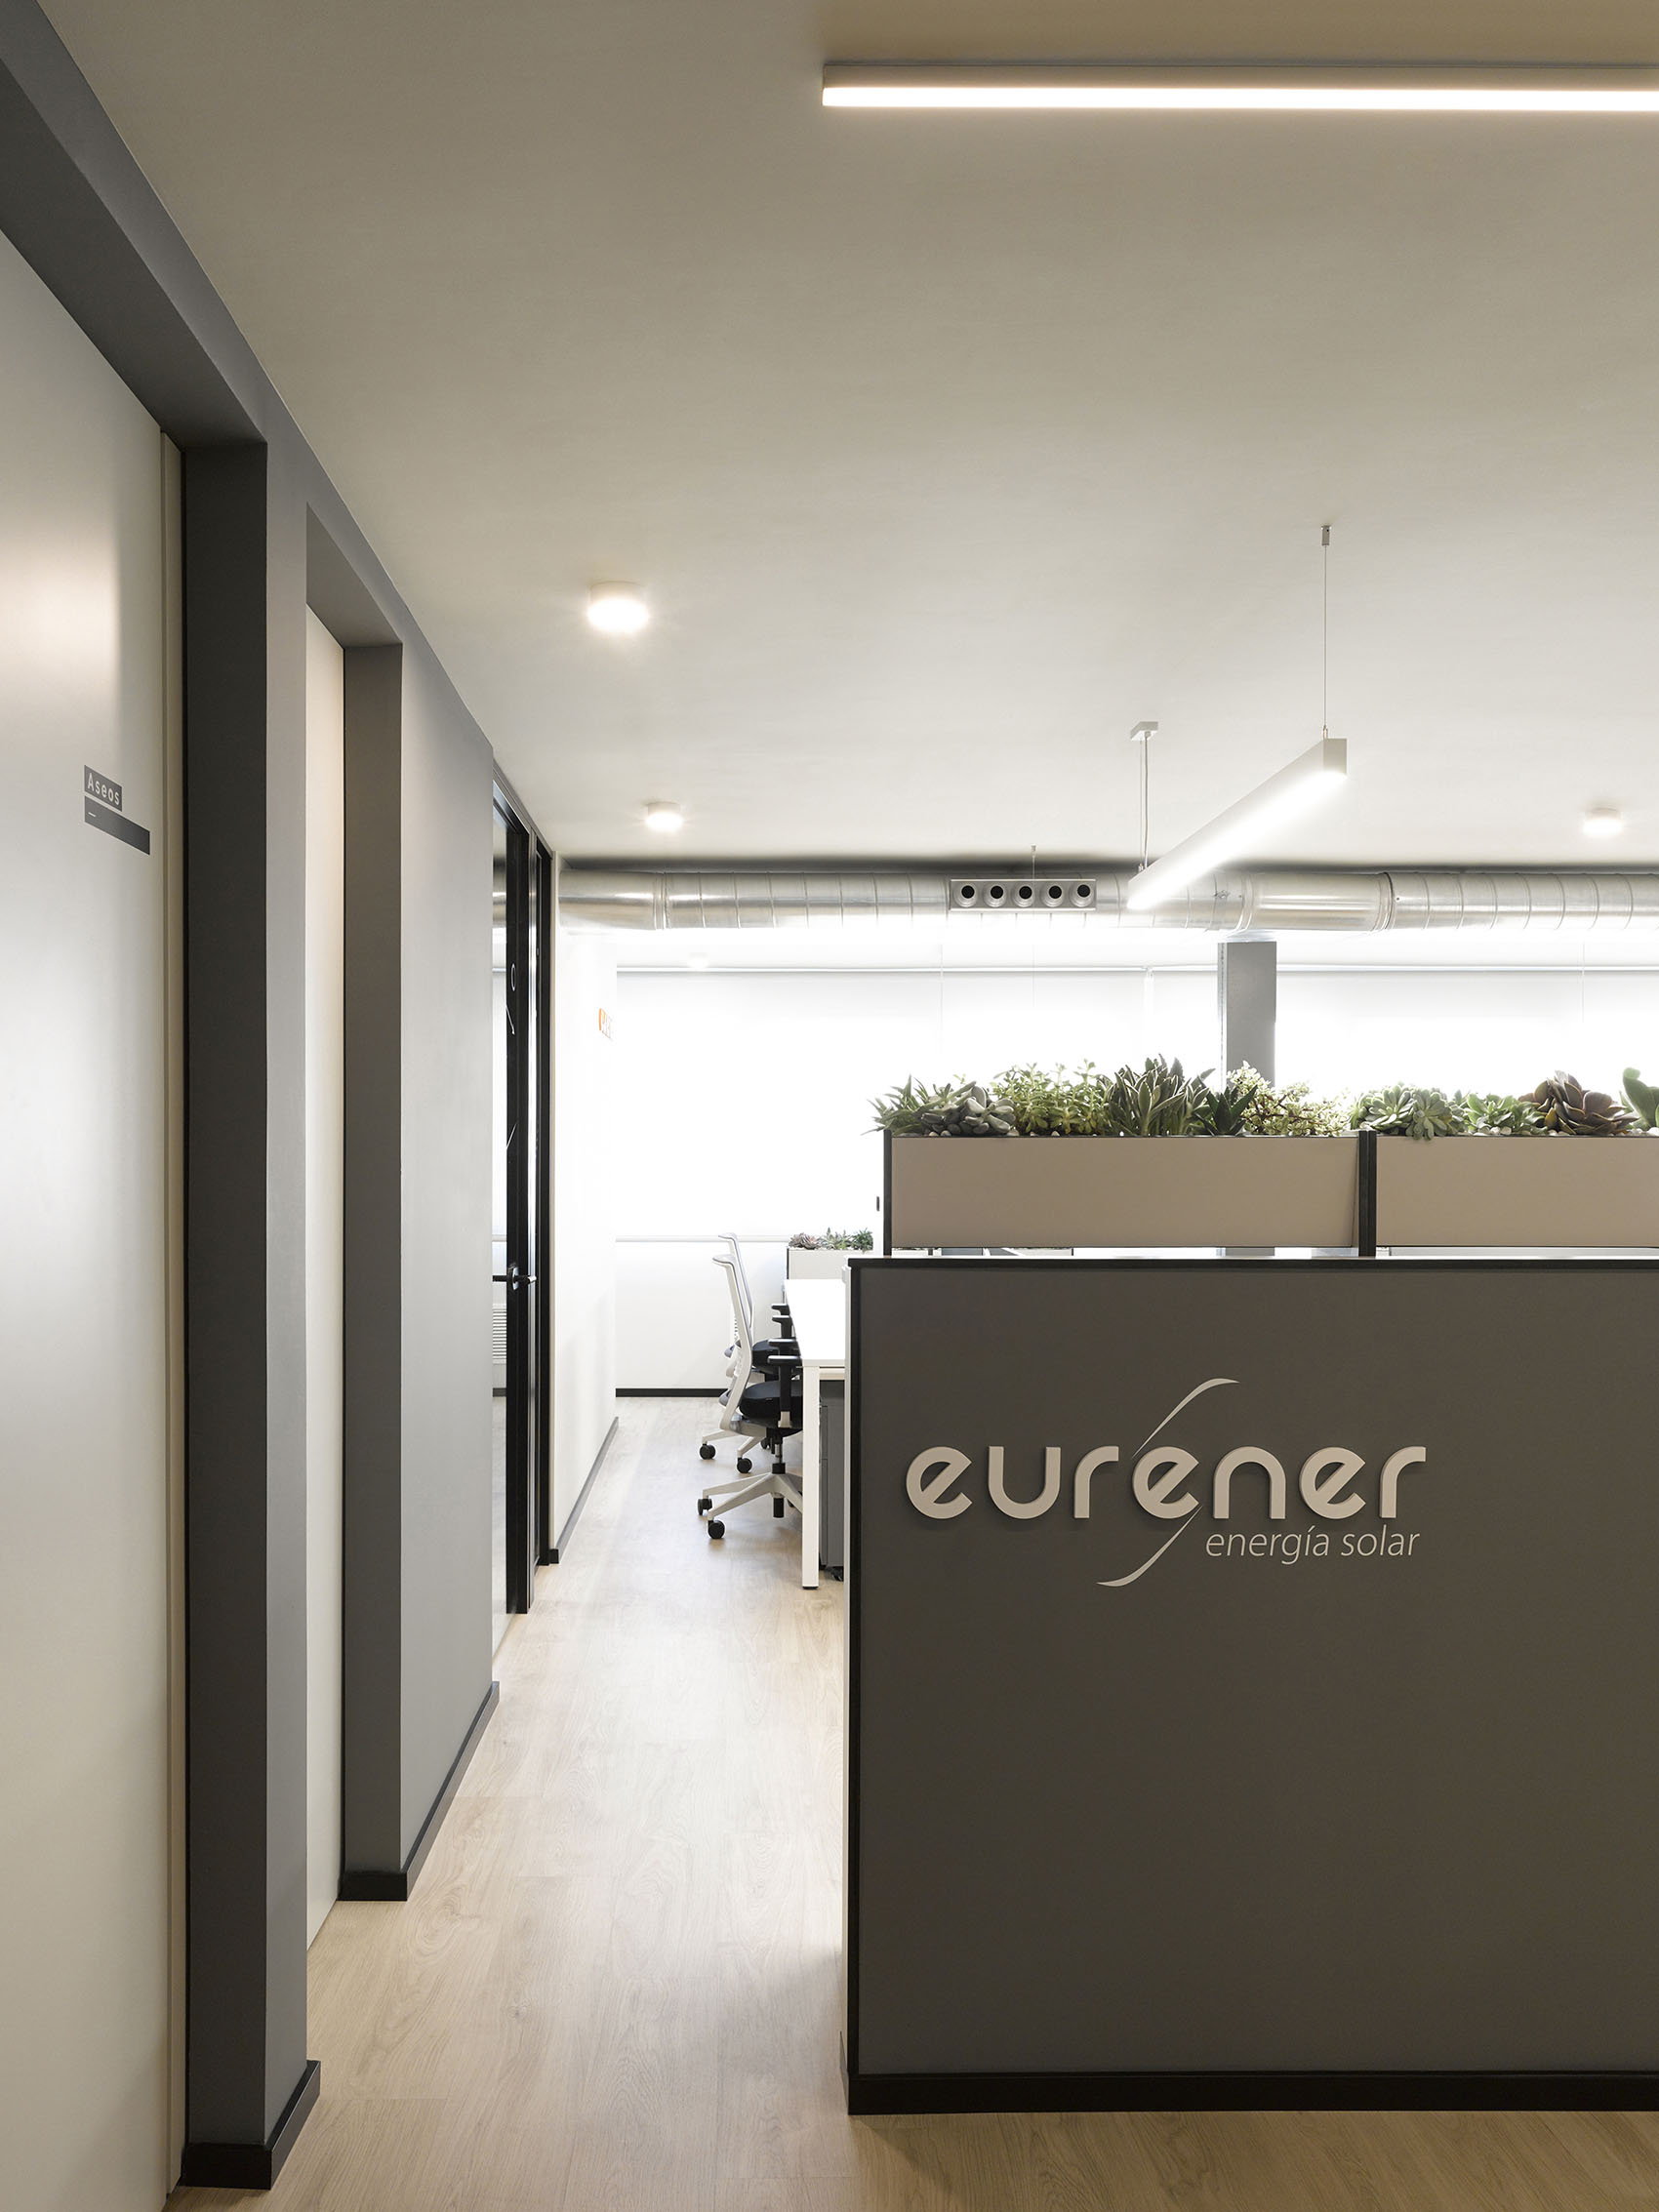 Proyecto de diseño para las oficinas Eurener en Valencia